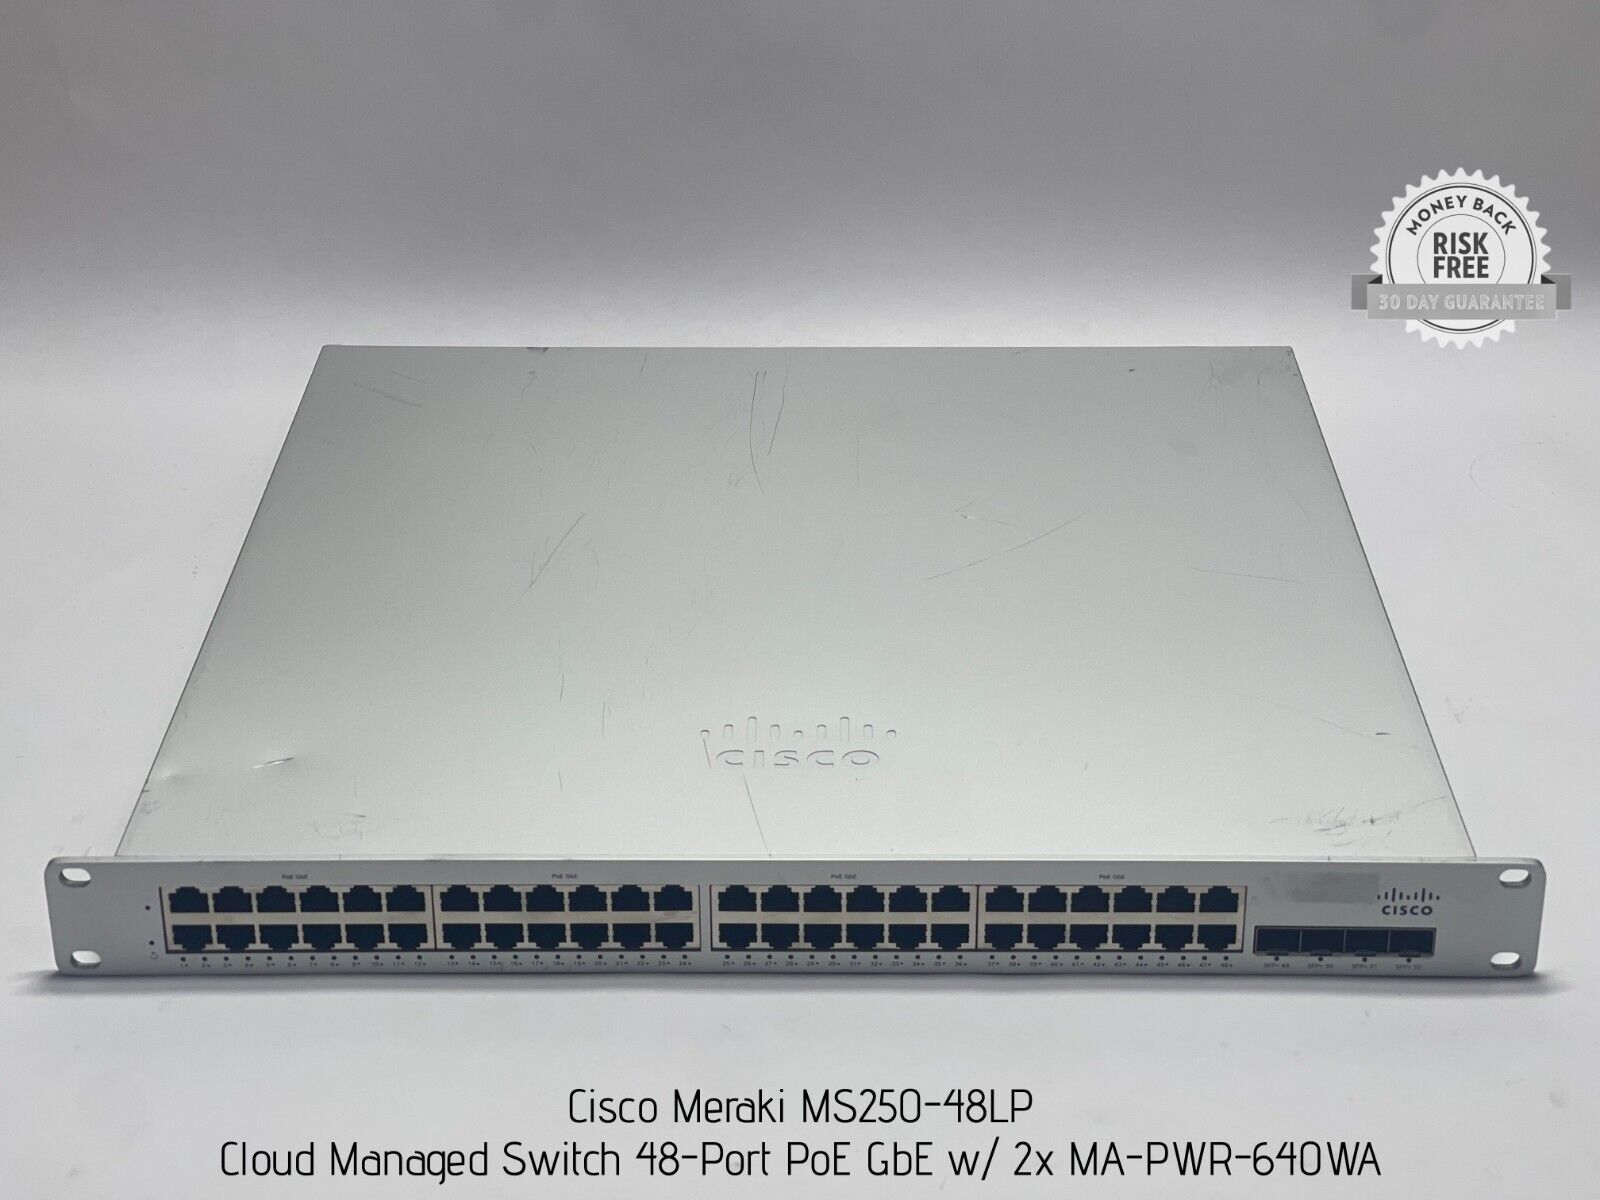 Cisco Meraki MS250-48LP Cloud Managed Switch 48-Port PoE GbE w/ 2x MA-PWR-640WA